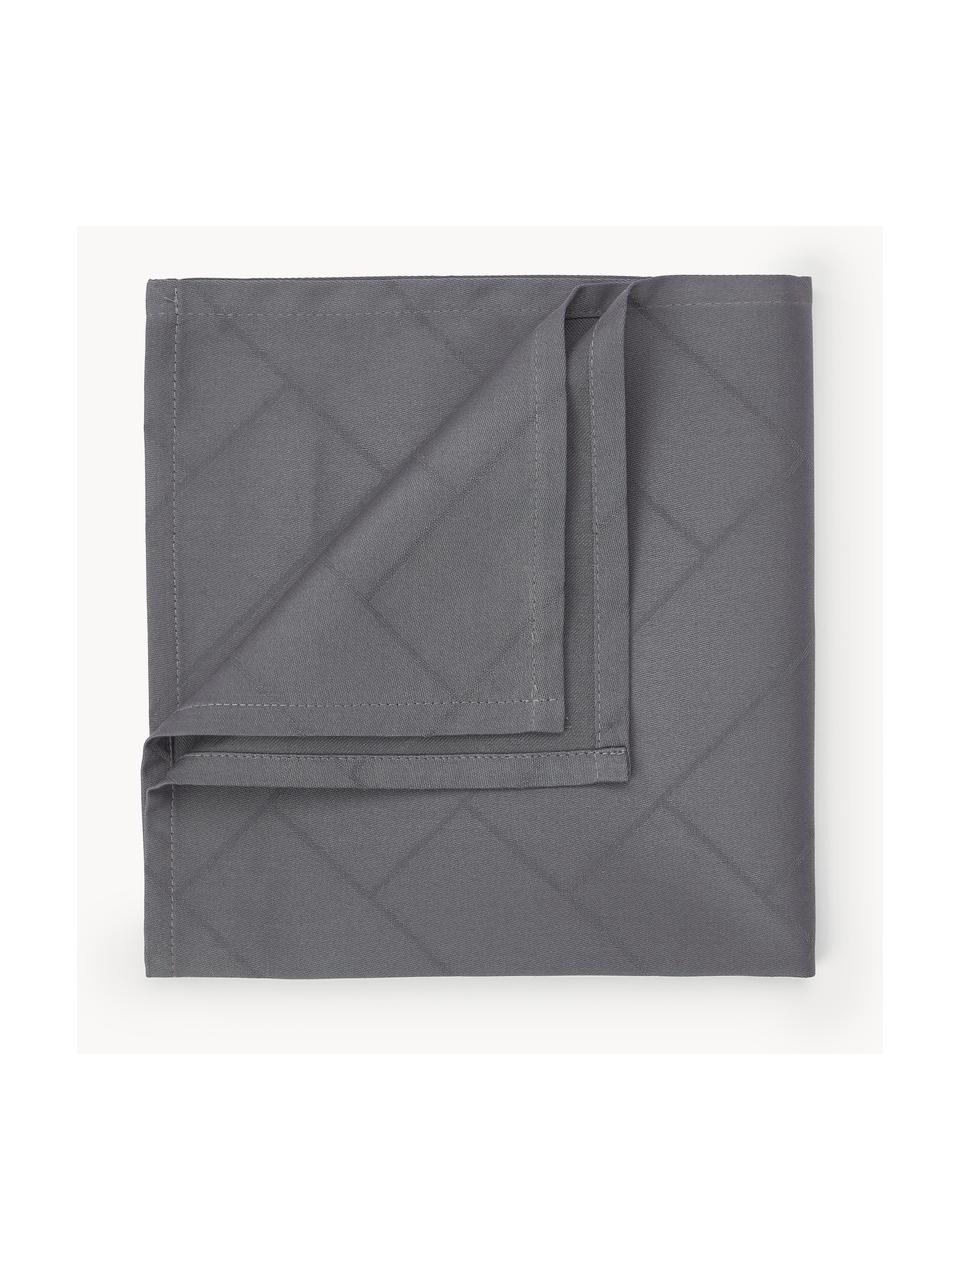 Serviettes de table Tiles, 4 pièces, 100 % coton, Anthracite, larg. 45 x long. 45 cm